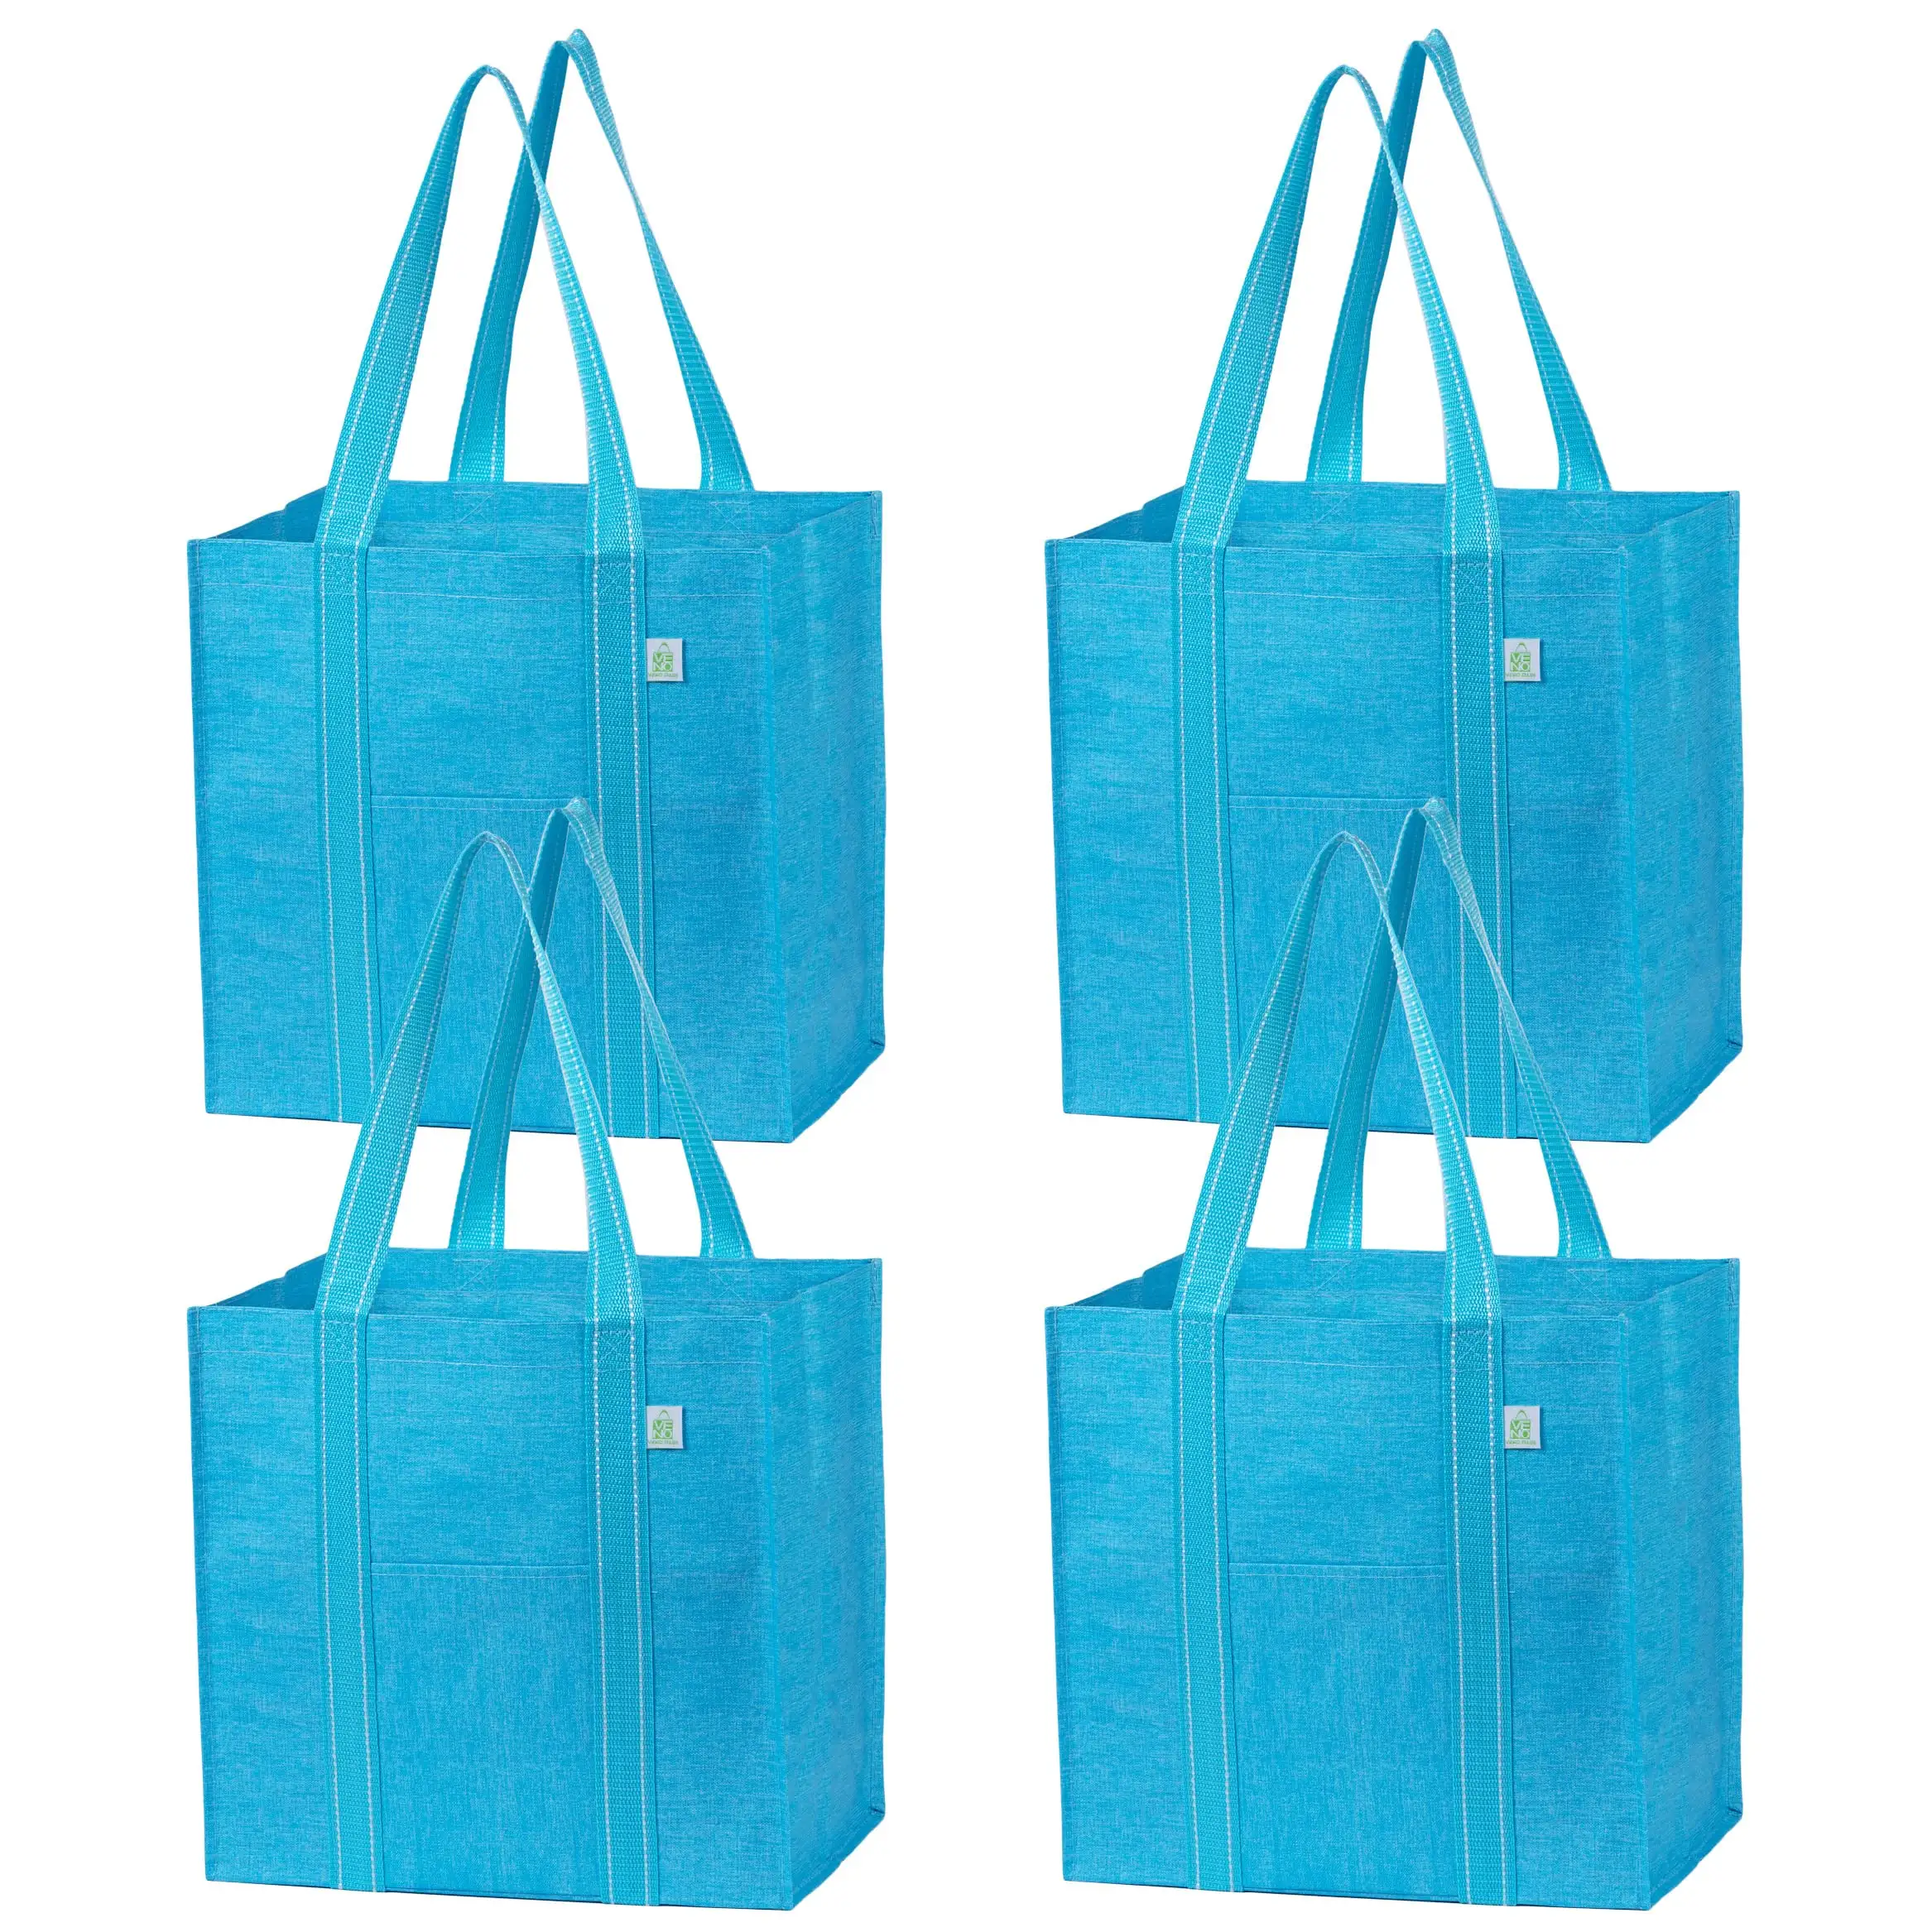 Nuevo diseño de bolsa no tejida bolsas de almacenamiento de bolsas de compras no tejidas con su propio logotipo regalo de supermercado reciclado